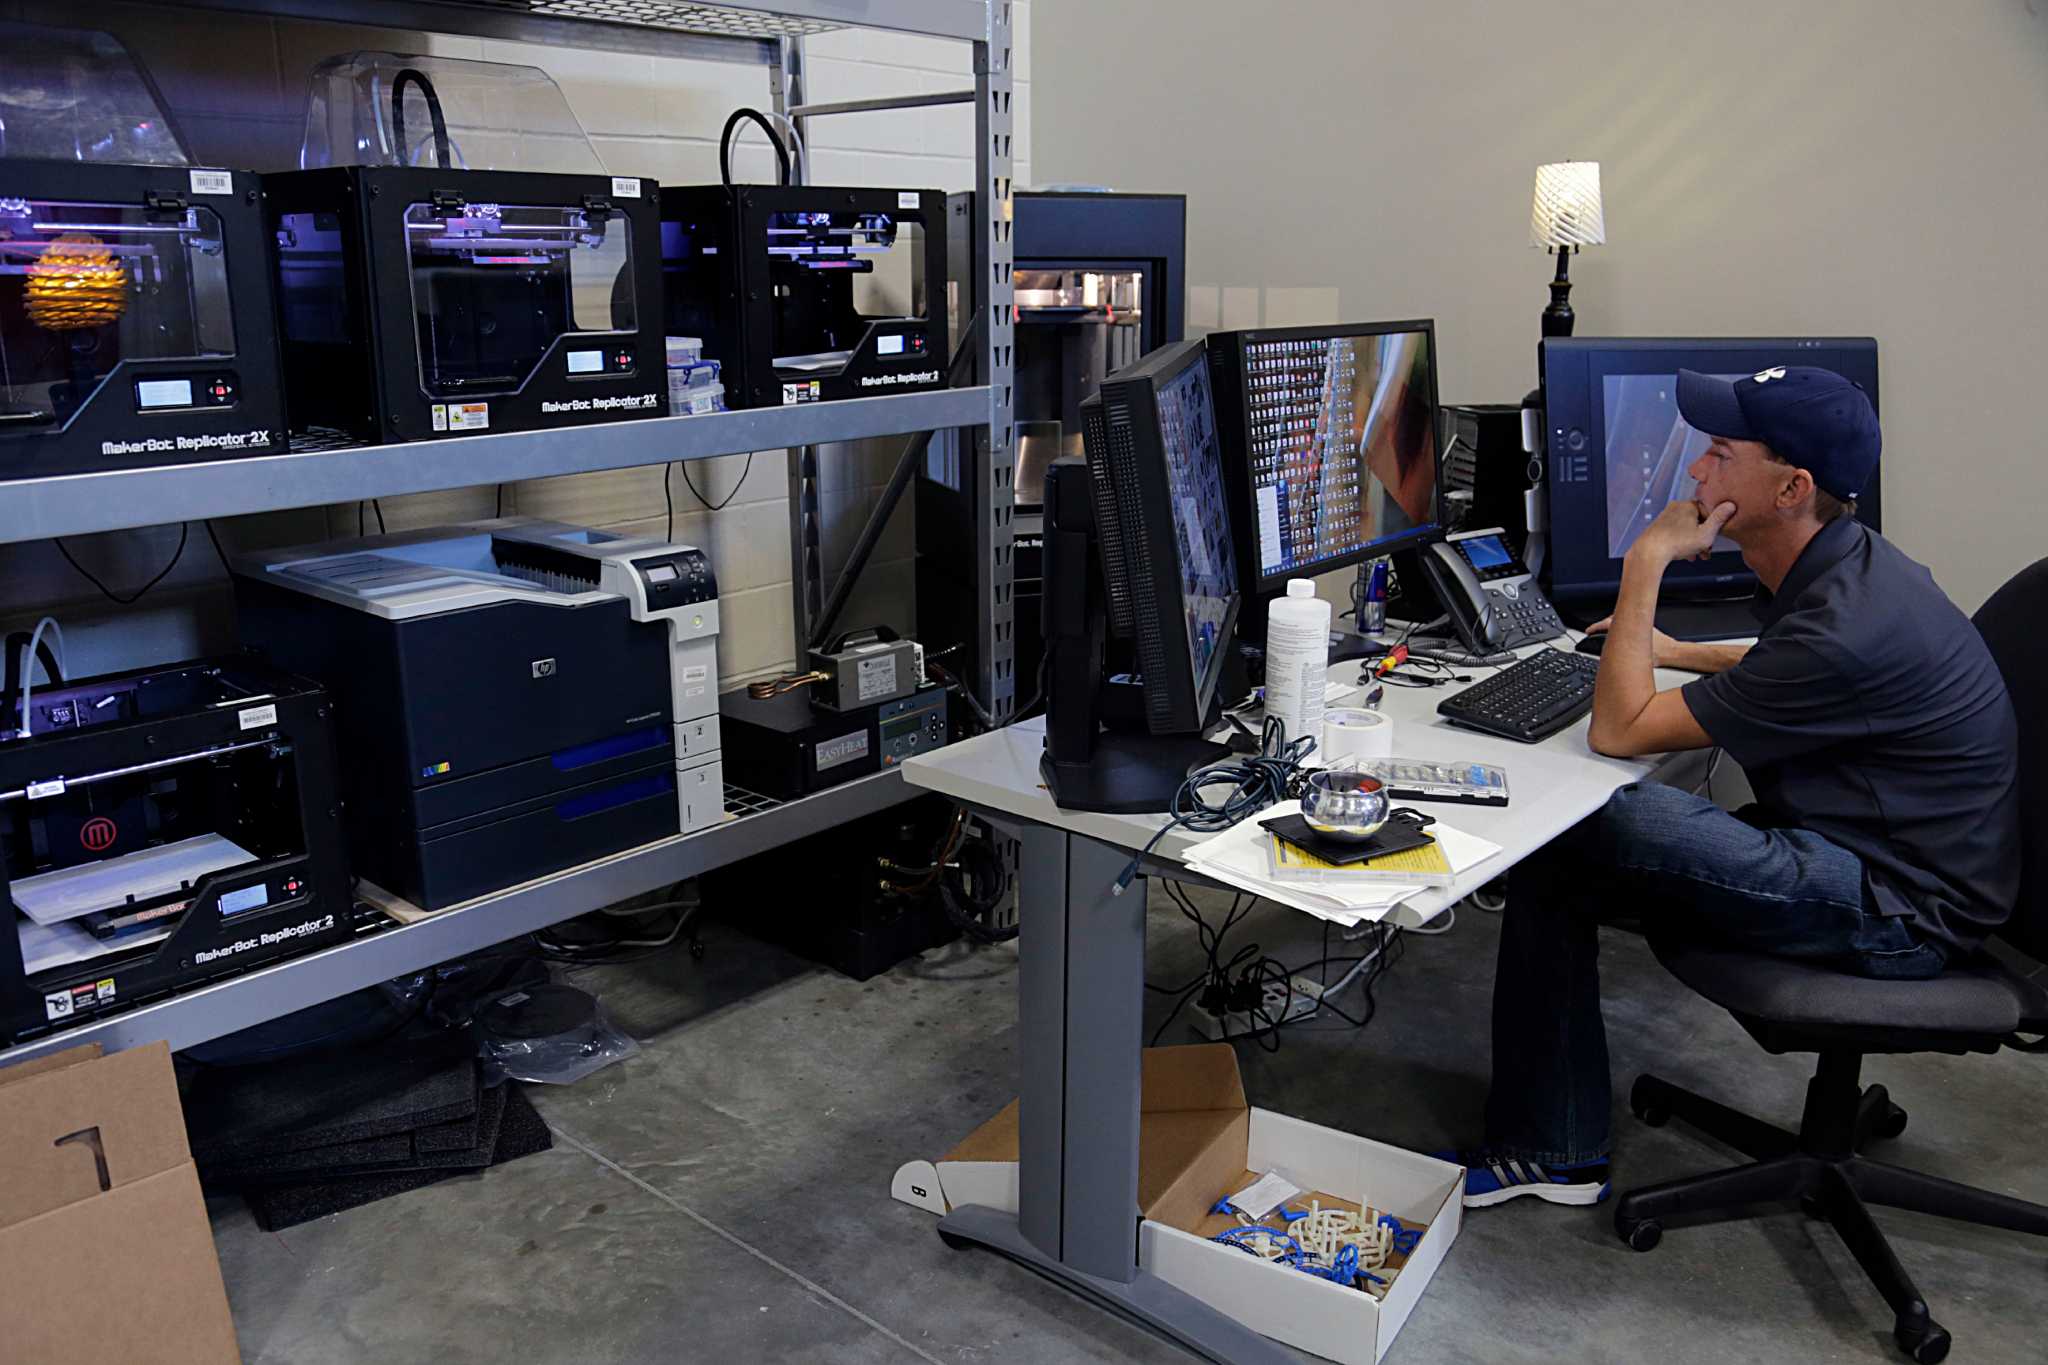 School makes big move into 3-D printing